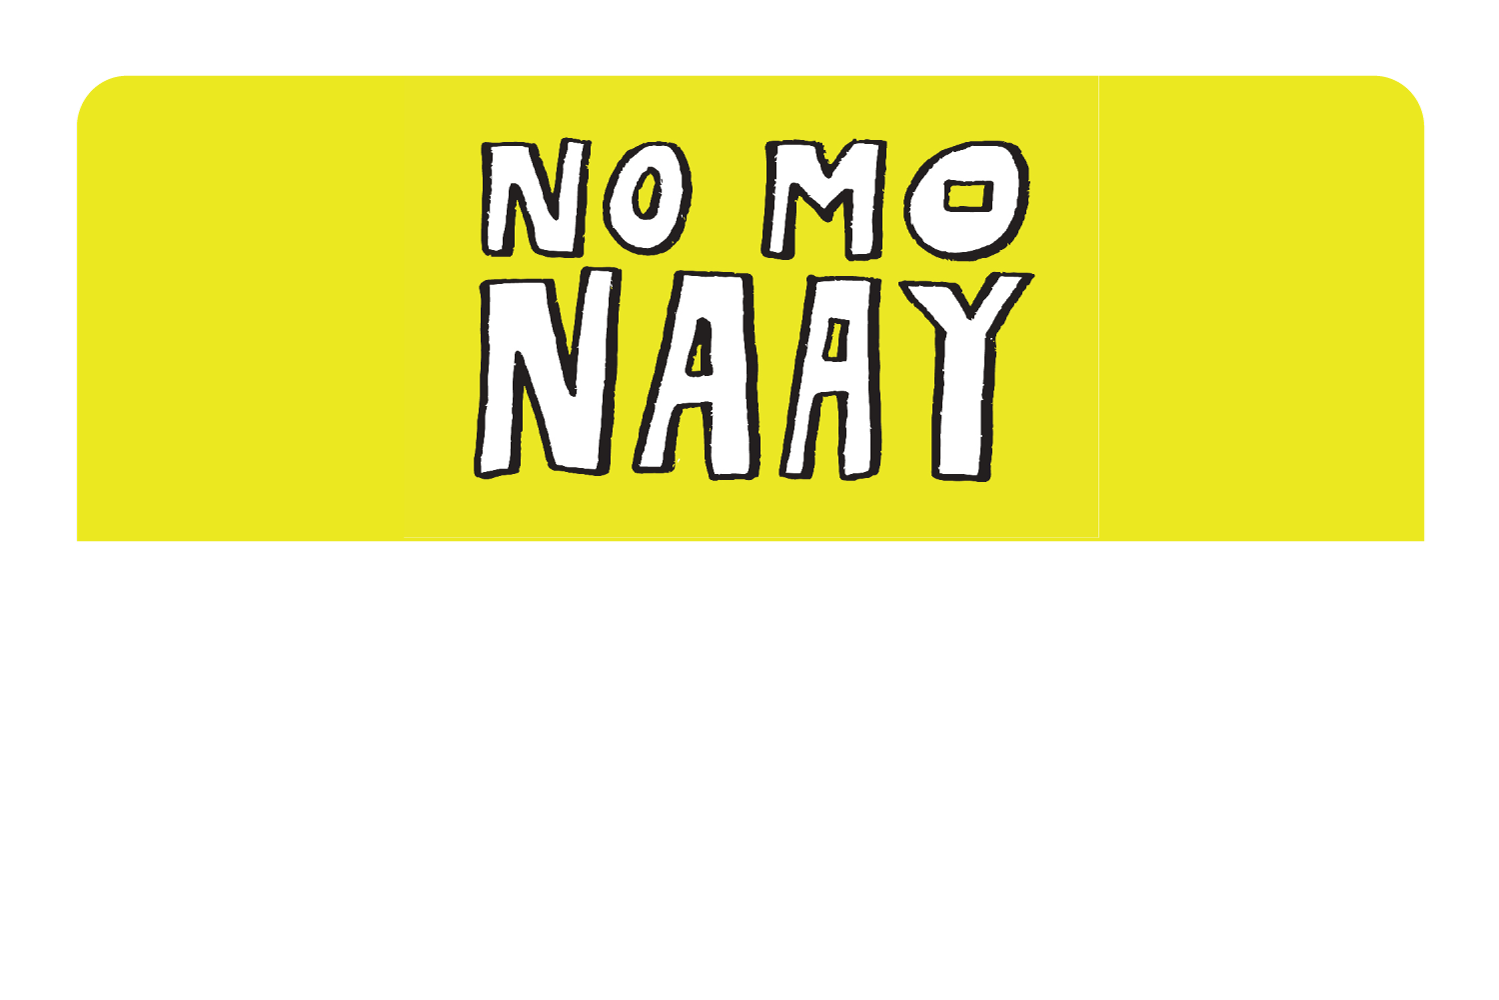 No Monaay